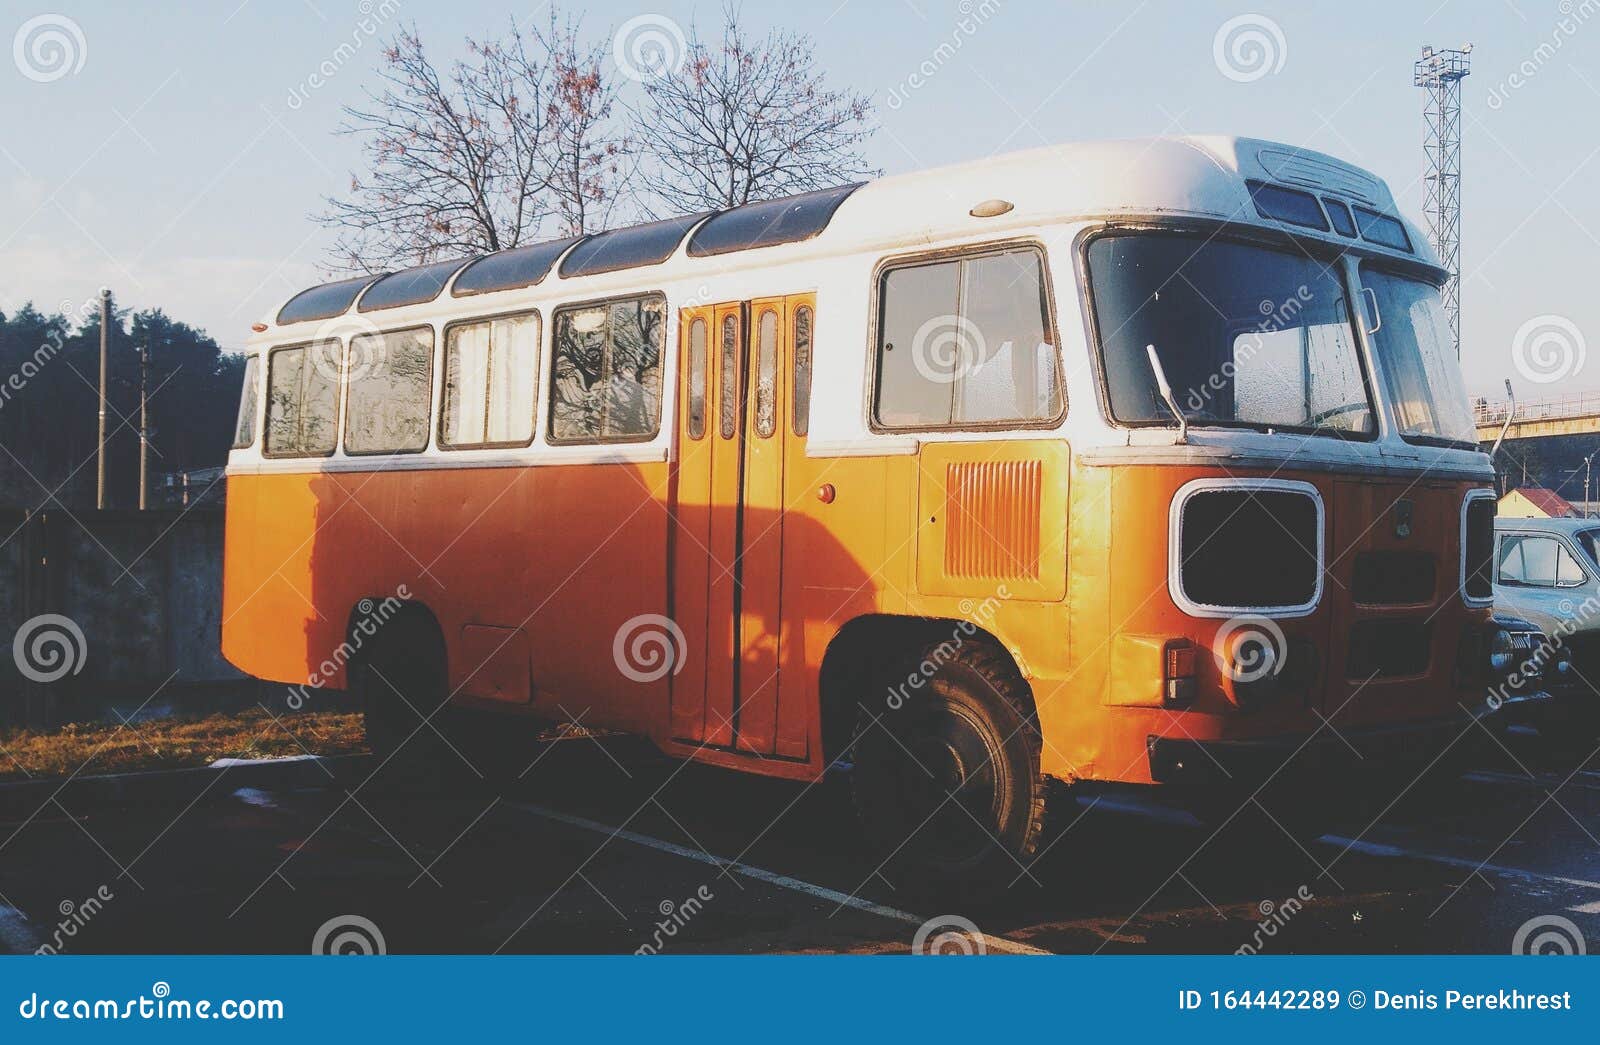 旧苏联巴士